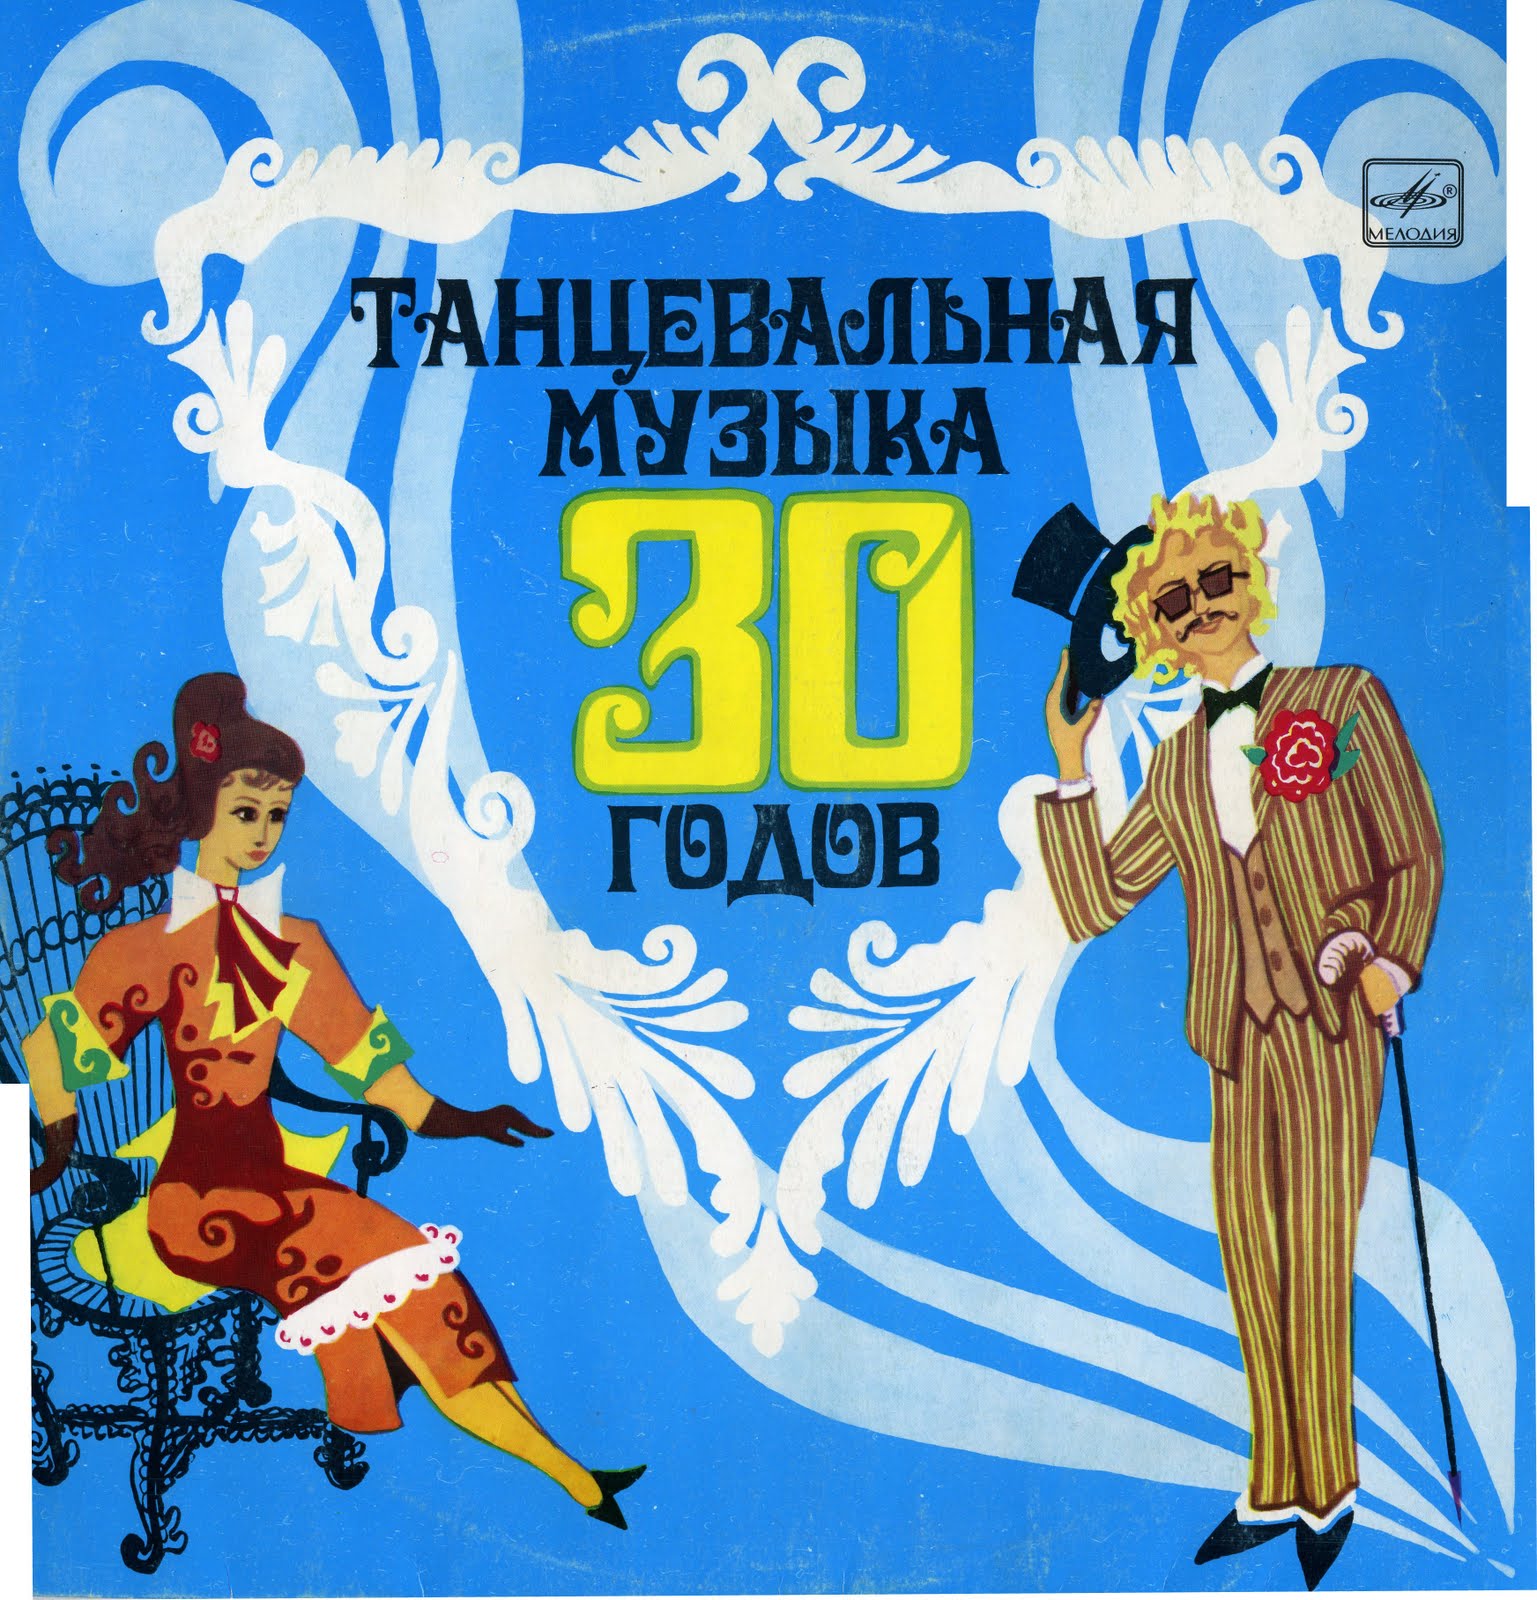 Английский 30 песен. Танцевальная музыка 30-х годов. Мелодии 30-х годов. Советские песни 30-х годов. Музыка 30-40-х годов.